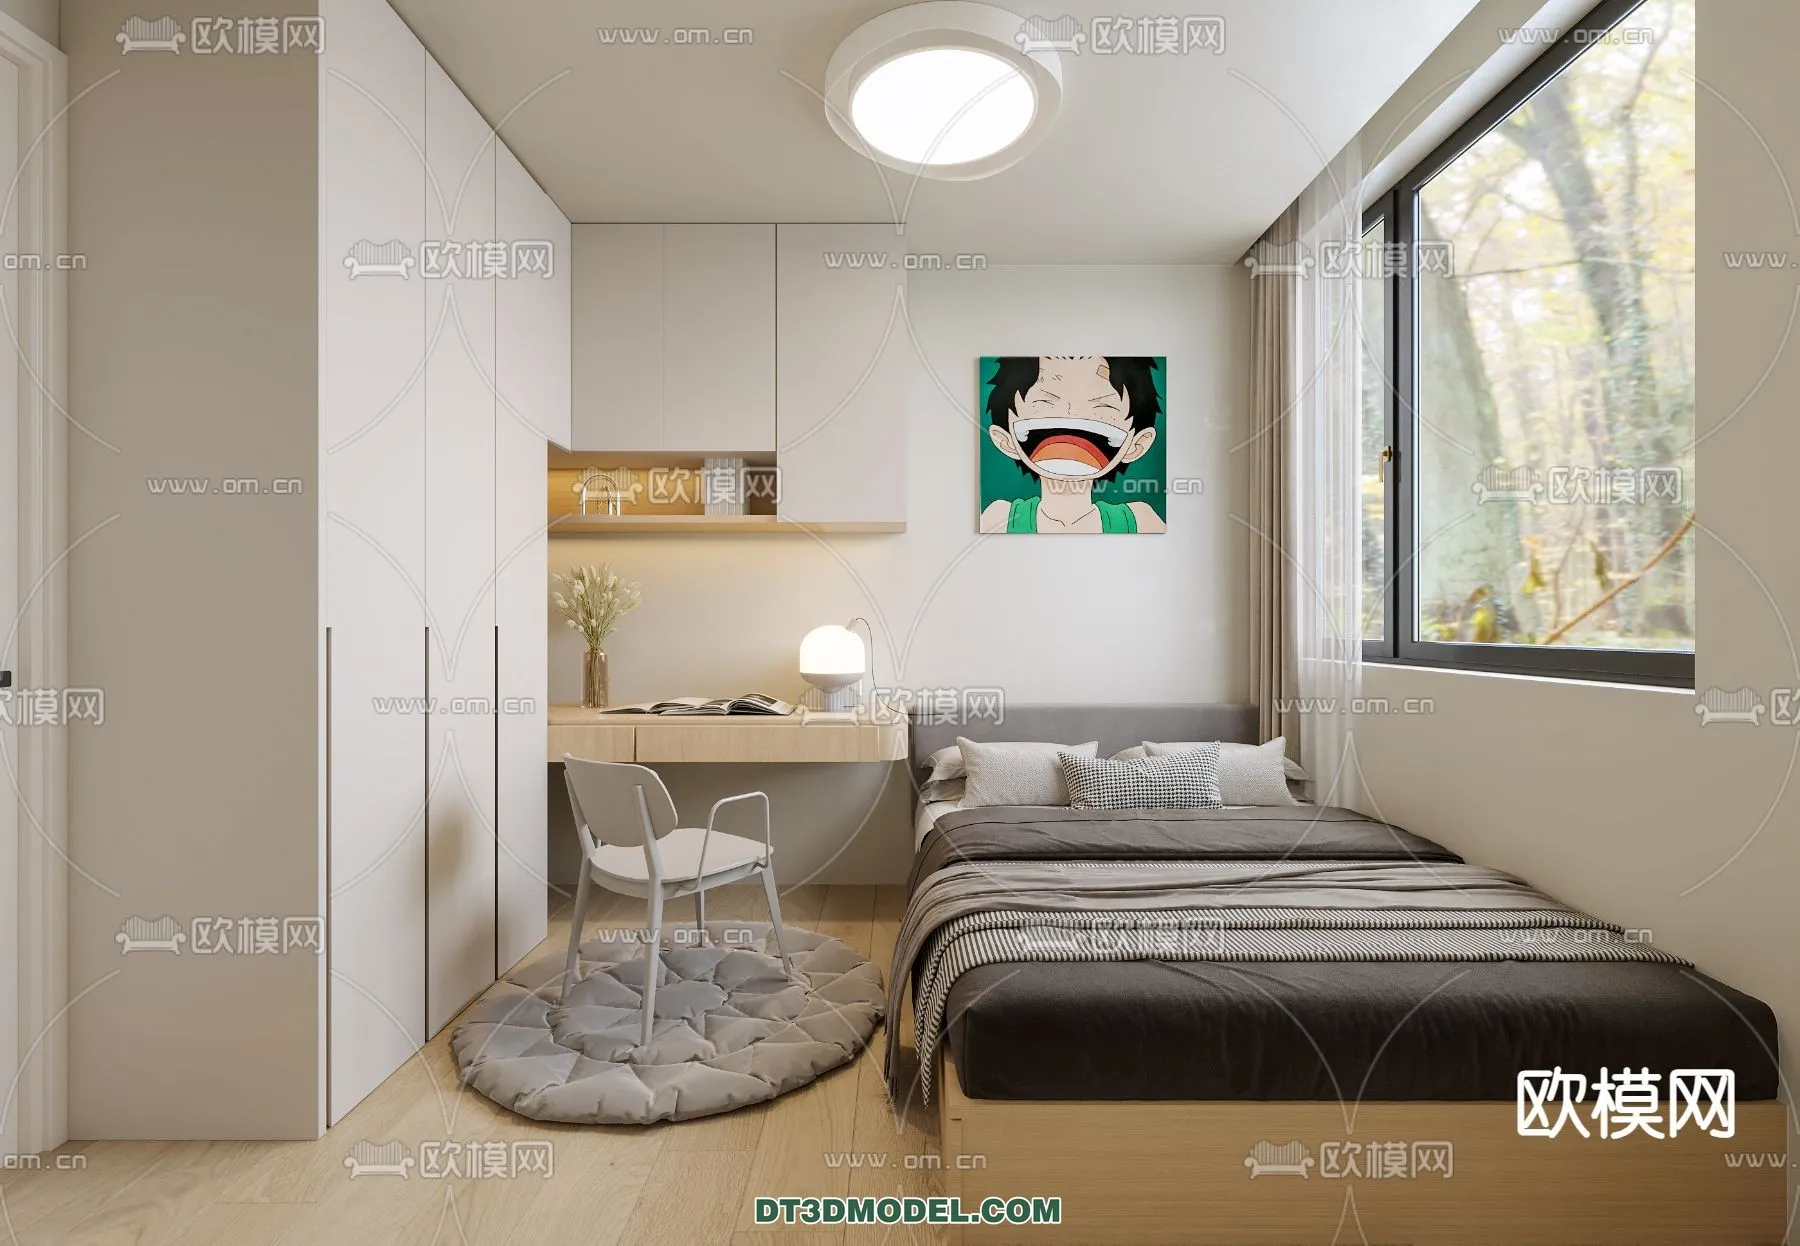 Tatami Bedroom – Japan Bedroom – 3D Scene – 054